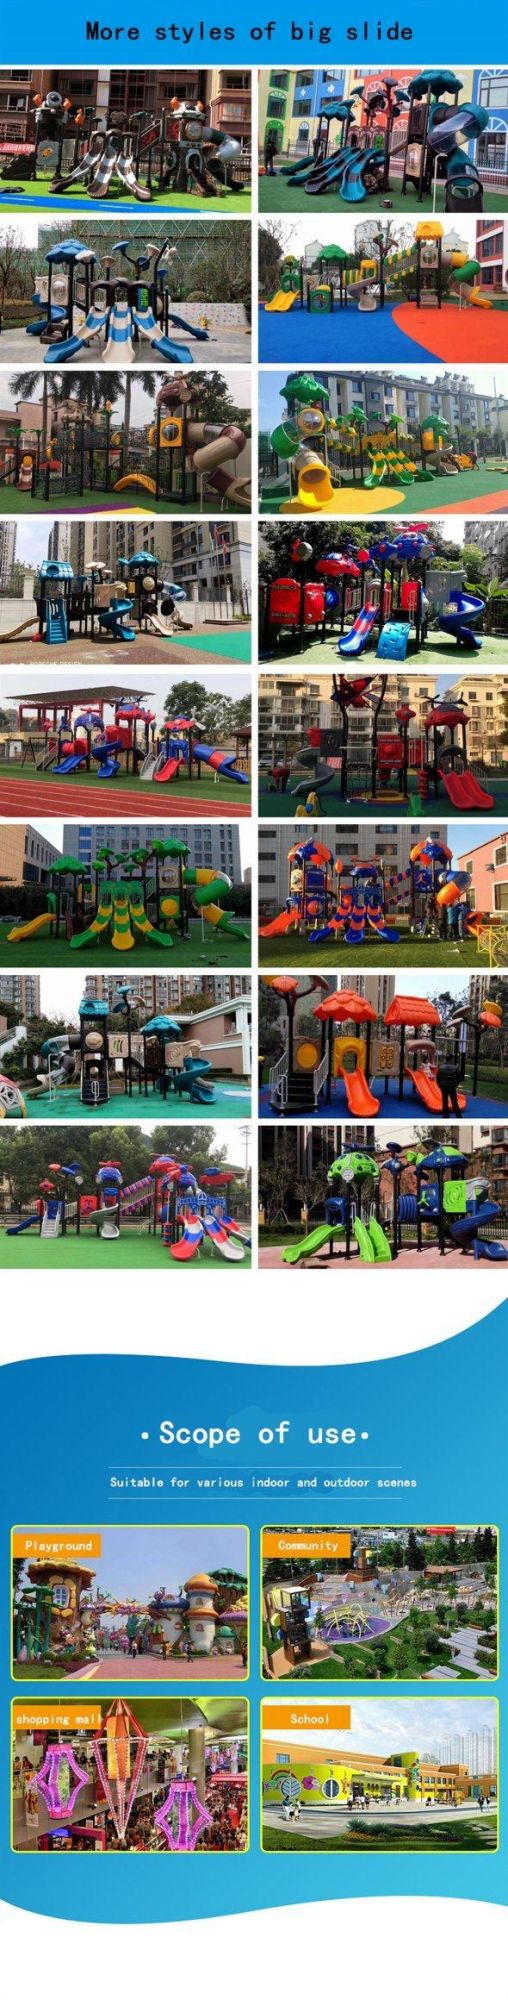 Outdoor Playground Plastic Slide Indoor Kids Amusement Park Equipment